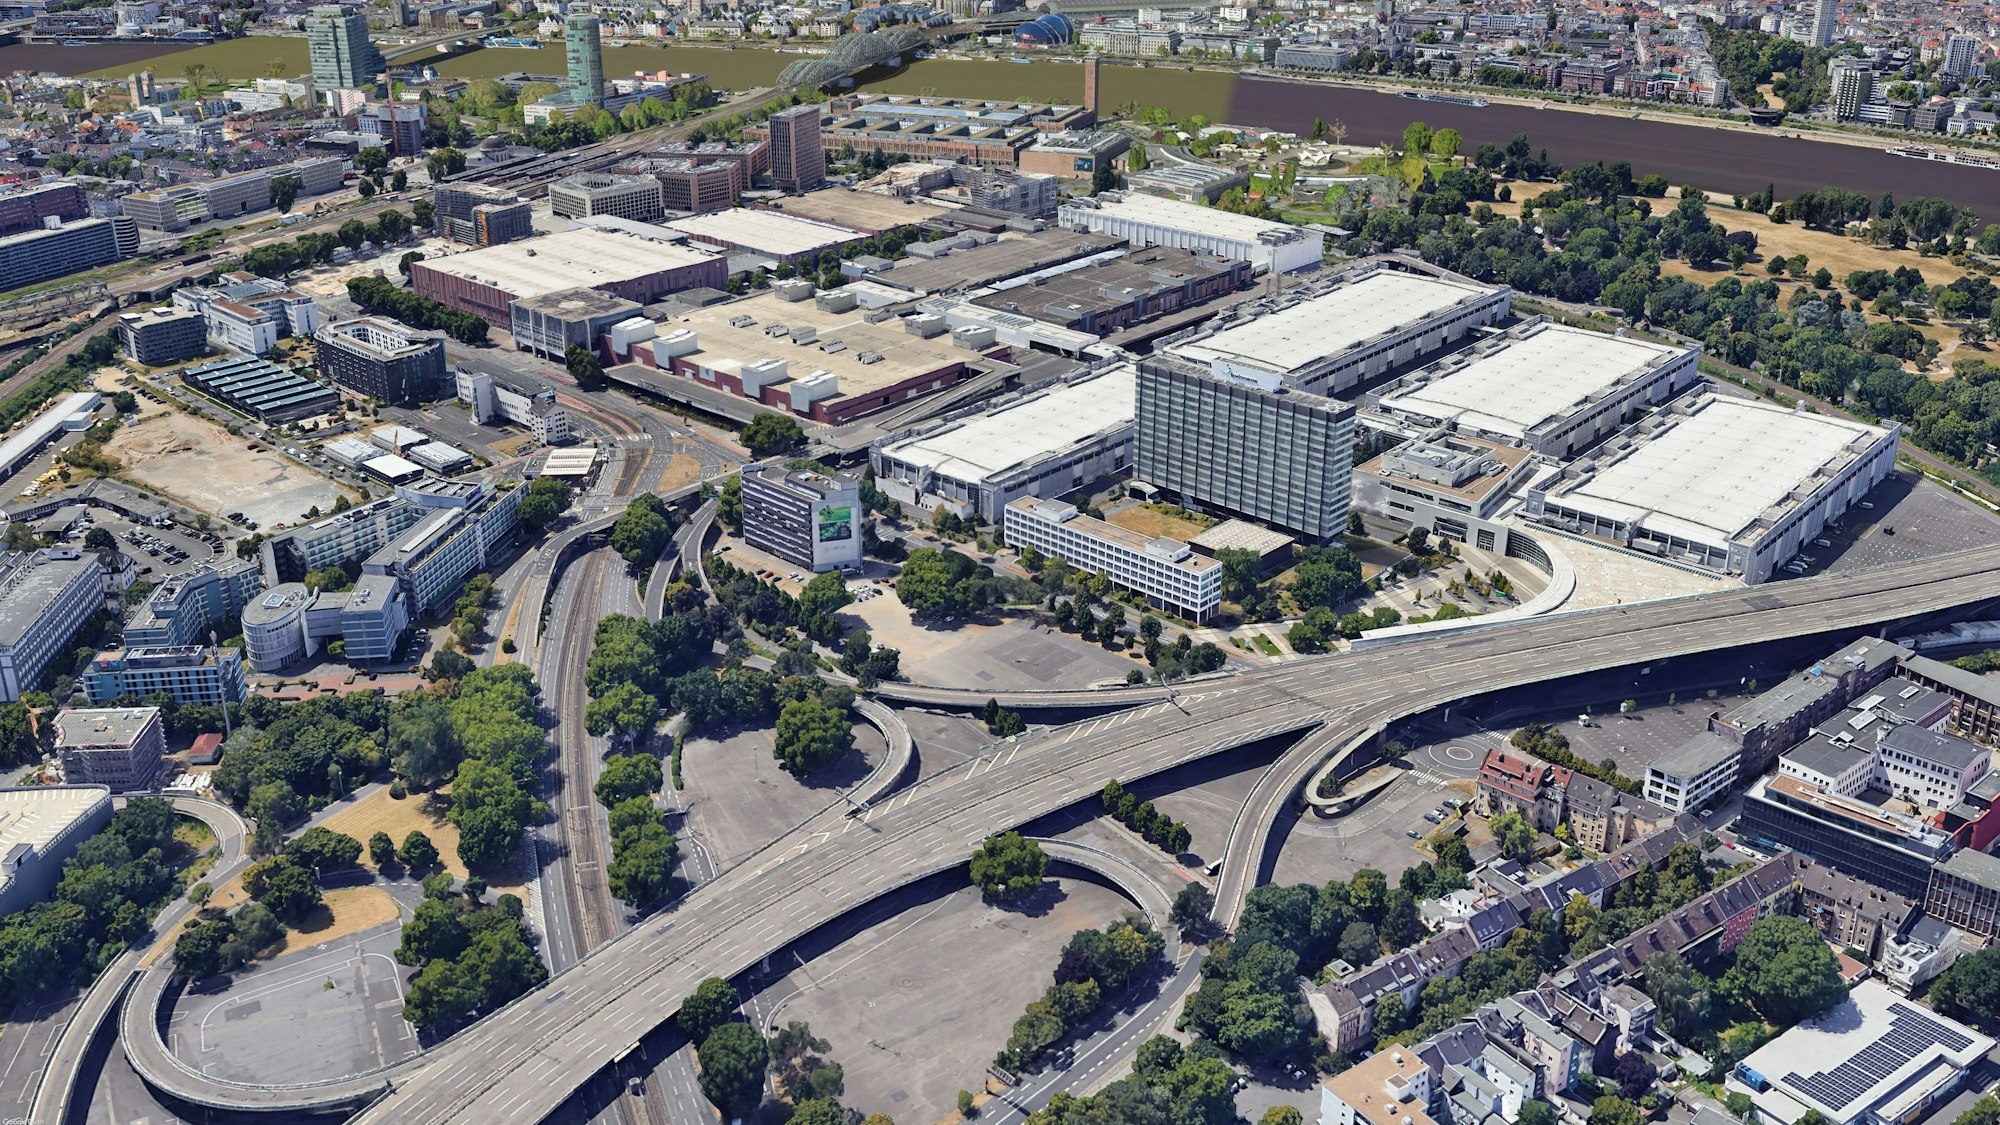 Blick auf das Gelände der Kölnmesse. Dort soll ein neues 120m hohes Hochhaus gebaut werden. Im Vordergrund ist die Zufahrt zur Zoobrücke (B55a) zu sehen. Foto: Google Earth/Image Landsat/Copernicus